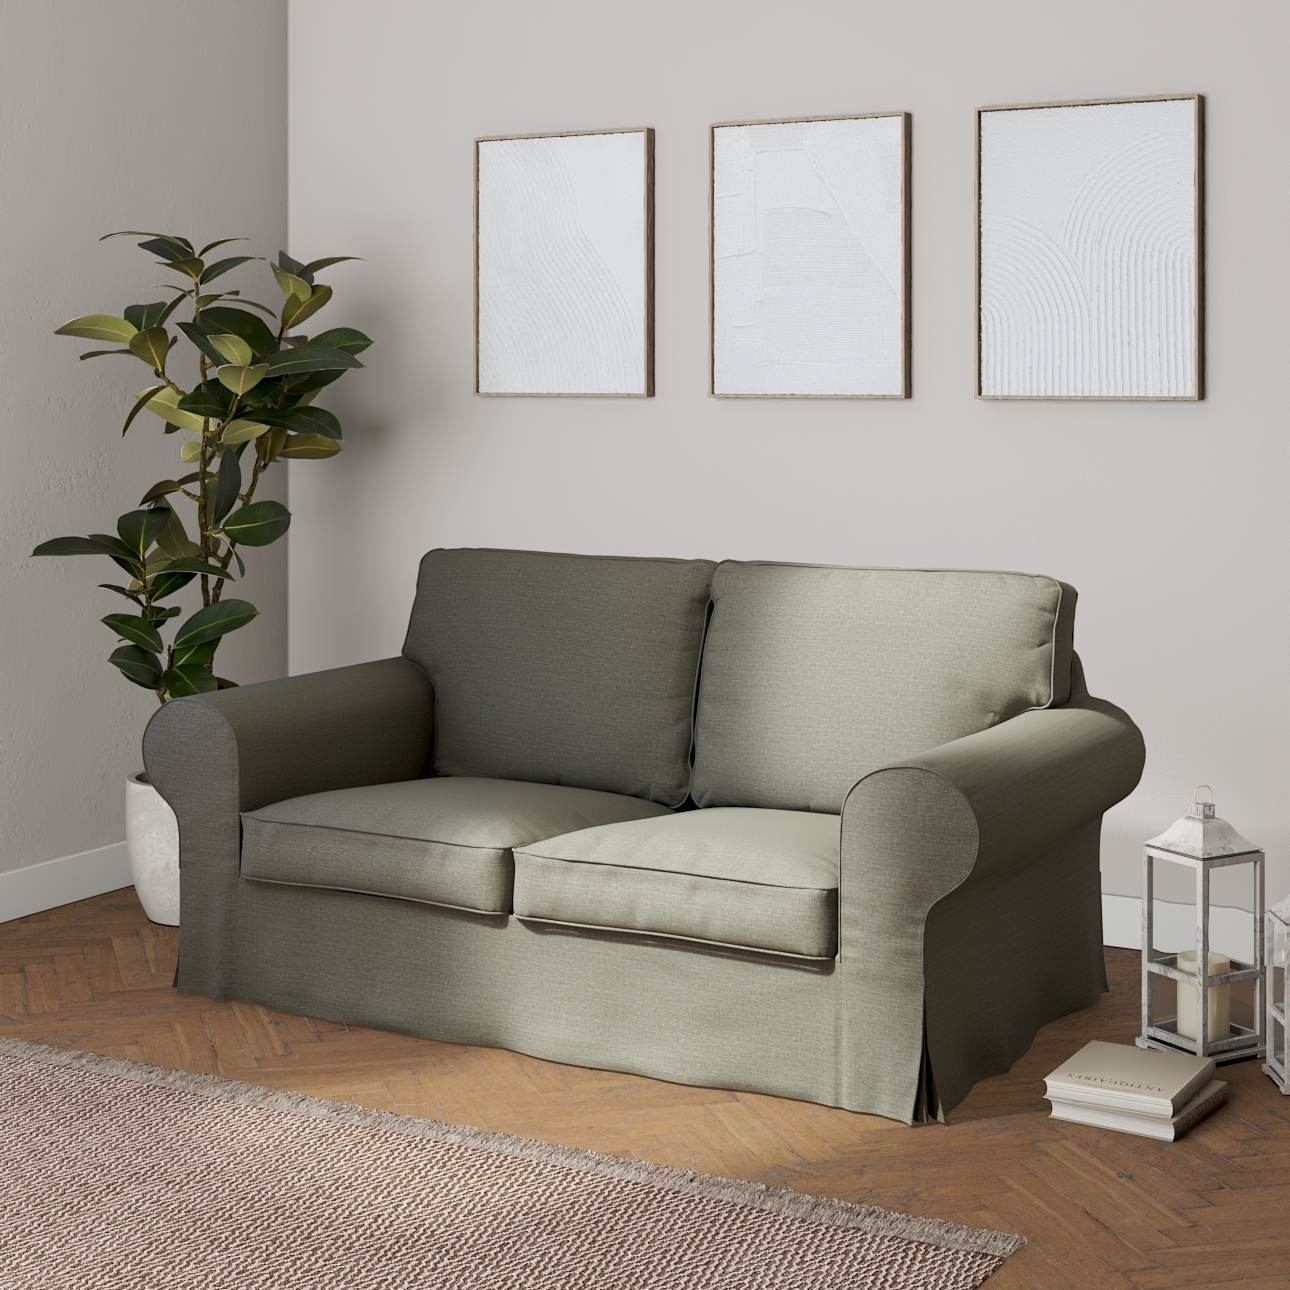 Bezug für Ektorp 2-Sitzer Schlafsofa NEUES Modell, grau-beige, Sofabezug fü günstig online kaufen